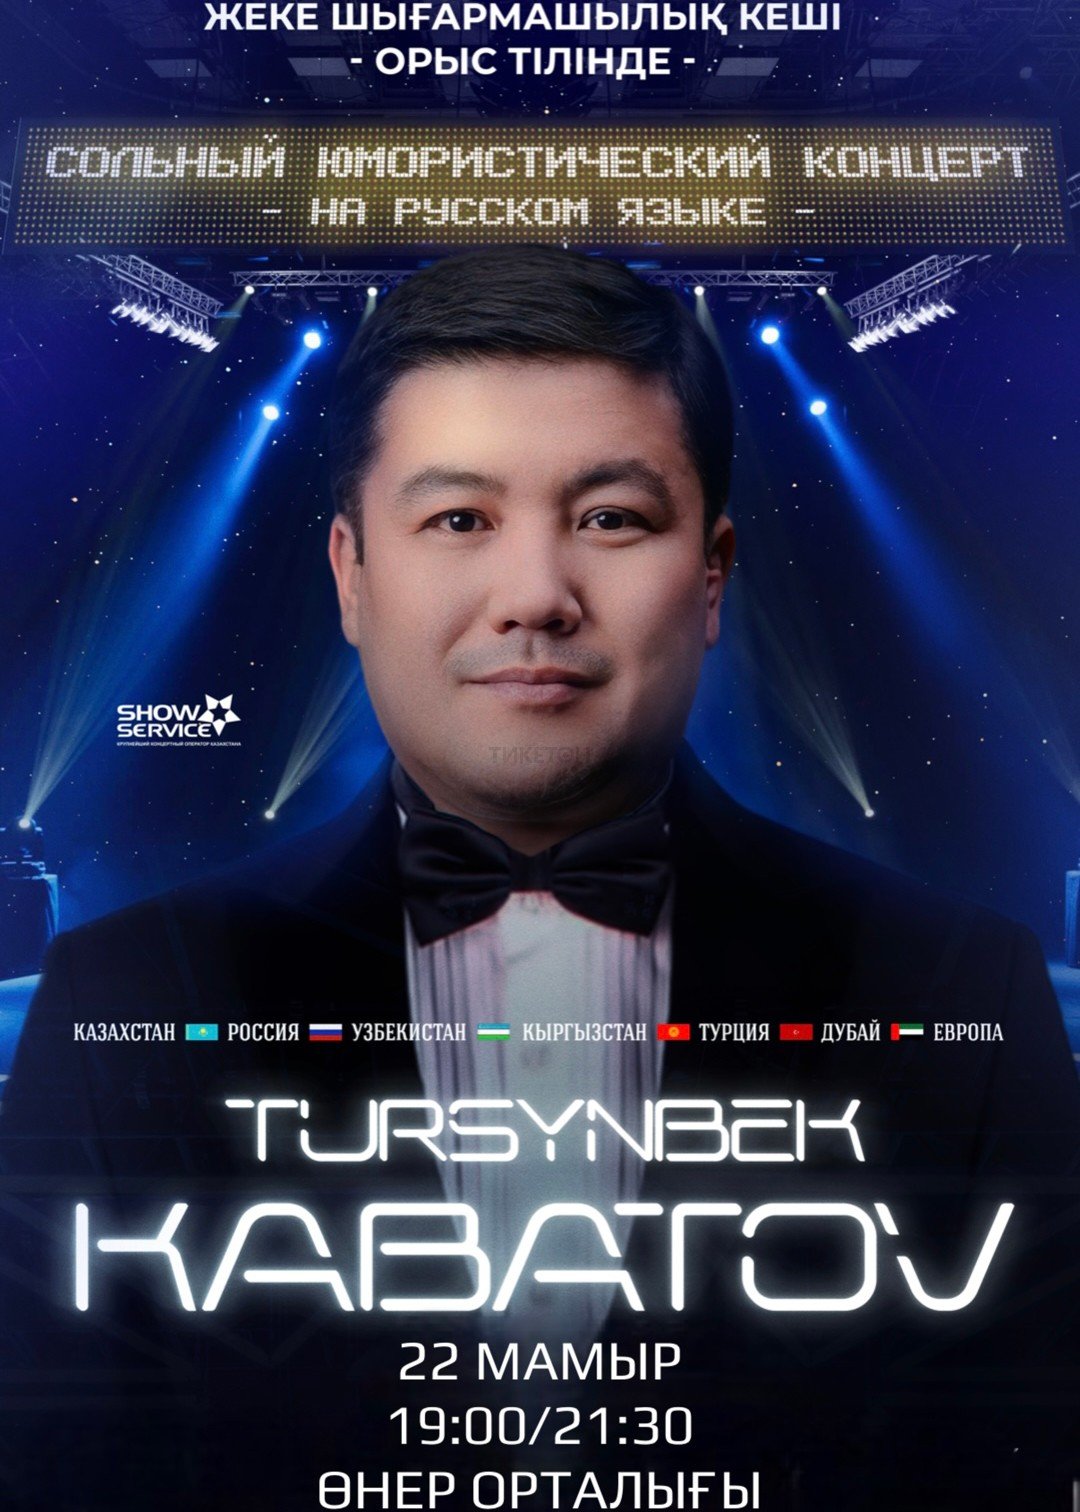 Tursynbek Kabatov in Aktobe